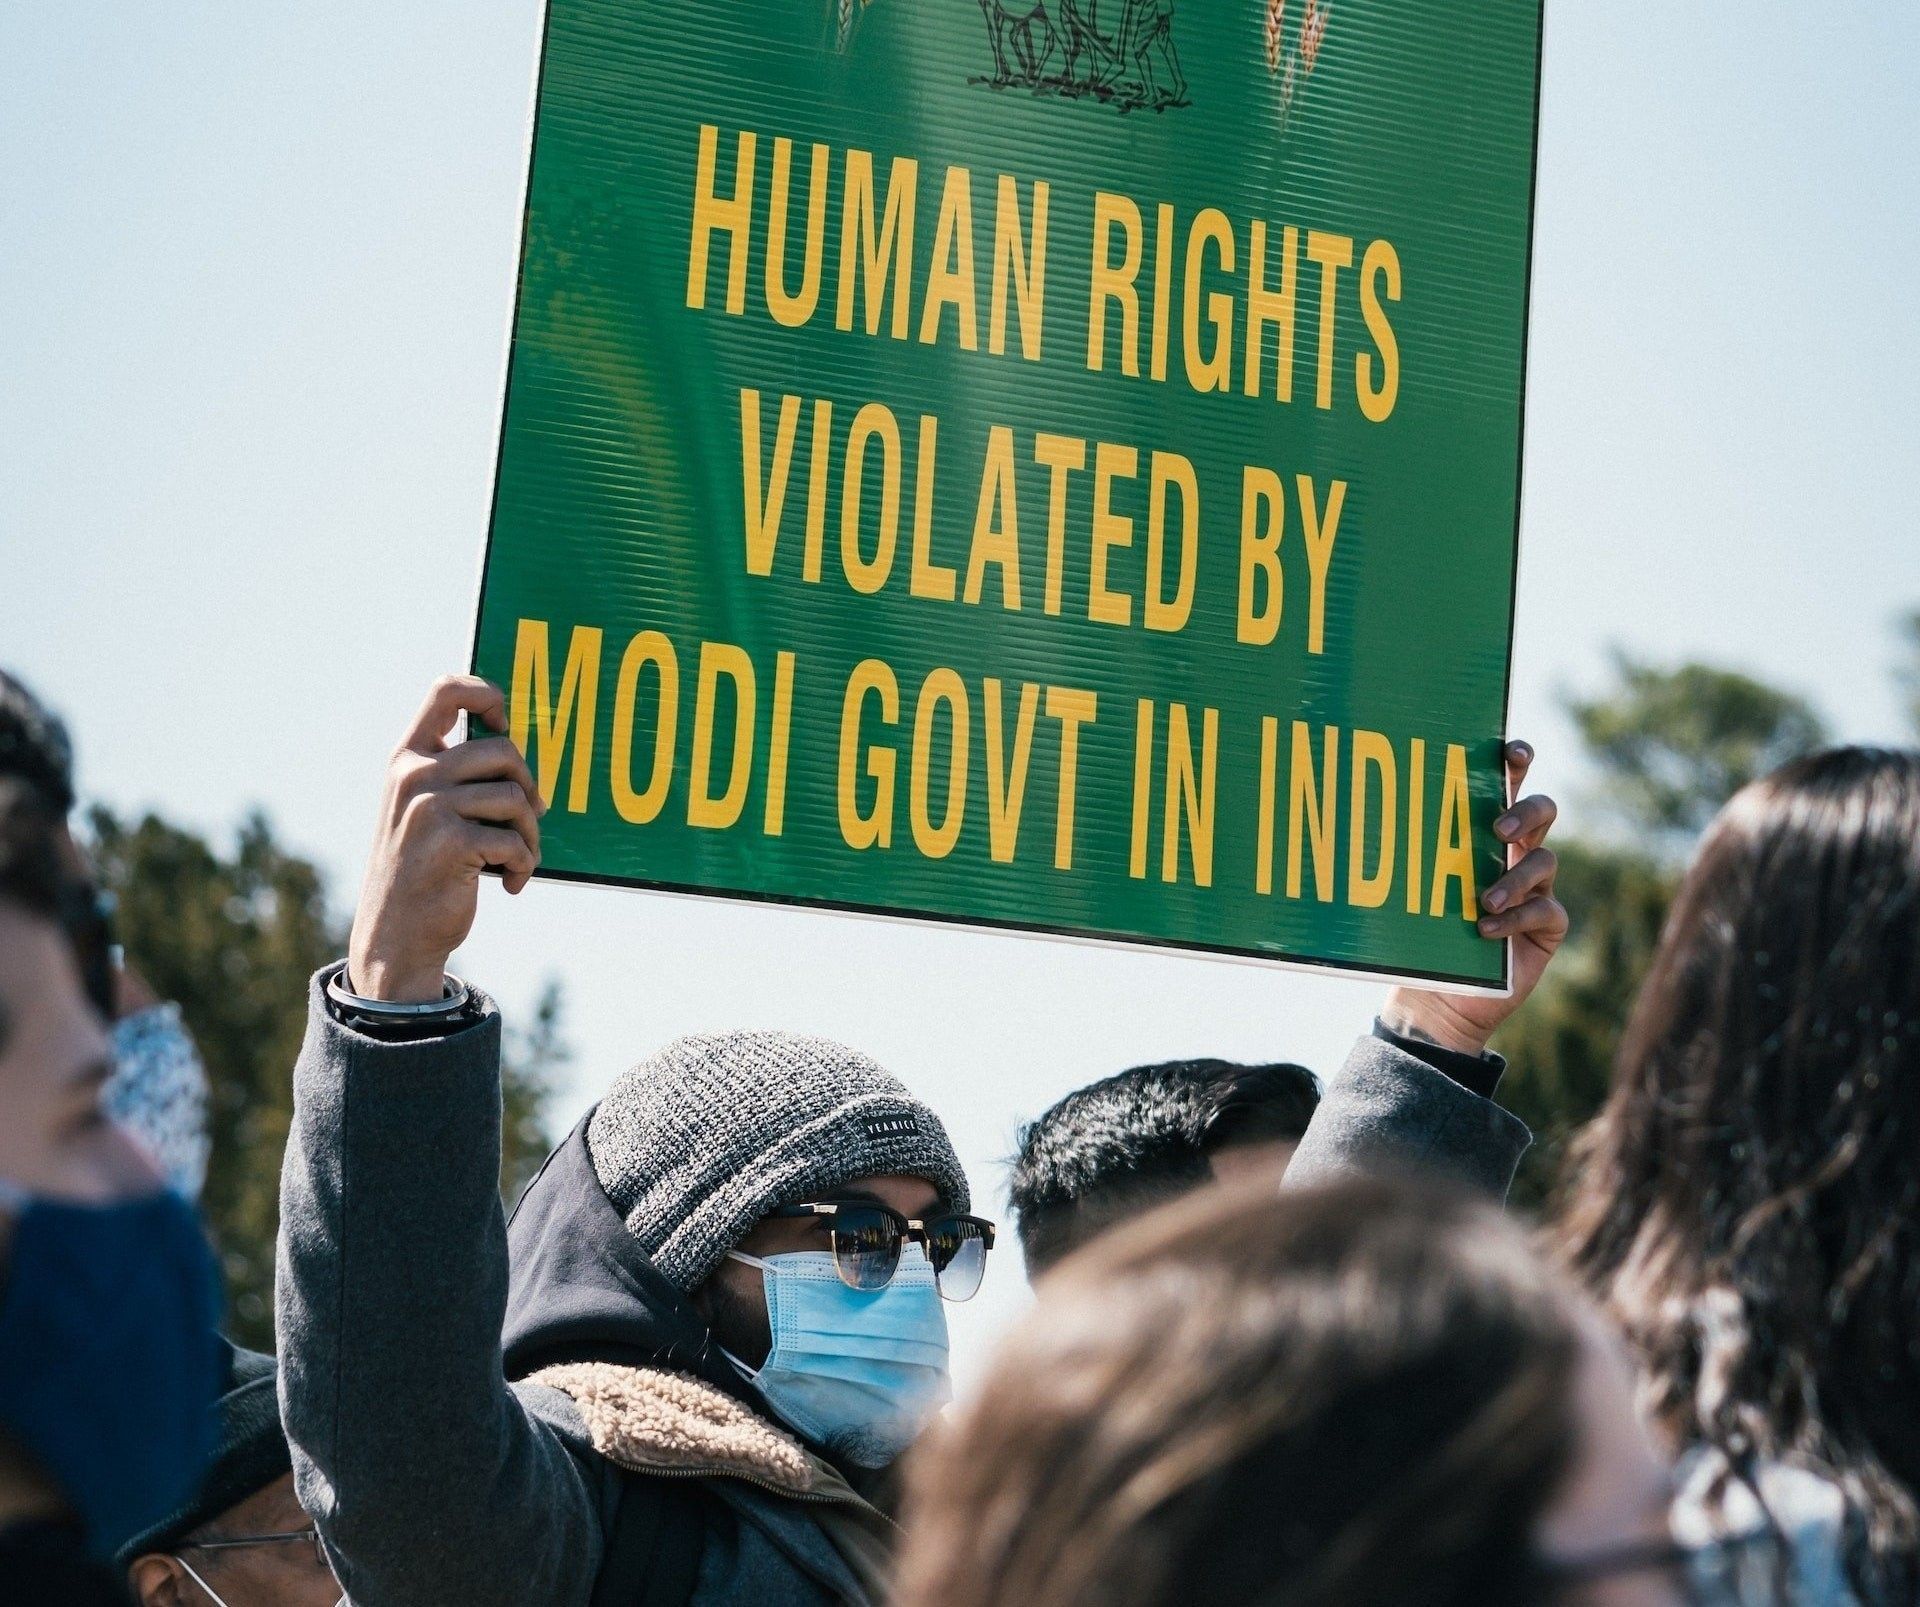 Twitter zacieśnia polityczną cenzurę w Indiach. Musk miał bronić wolności słowa